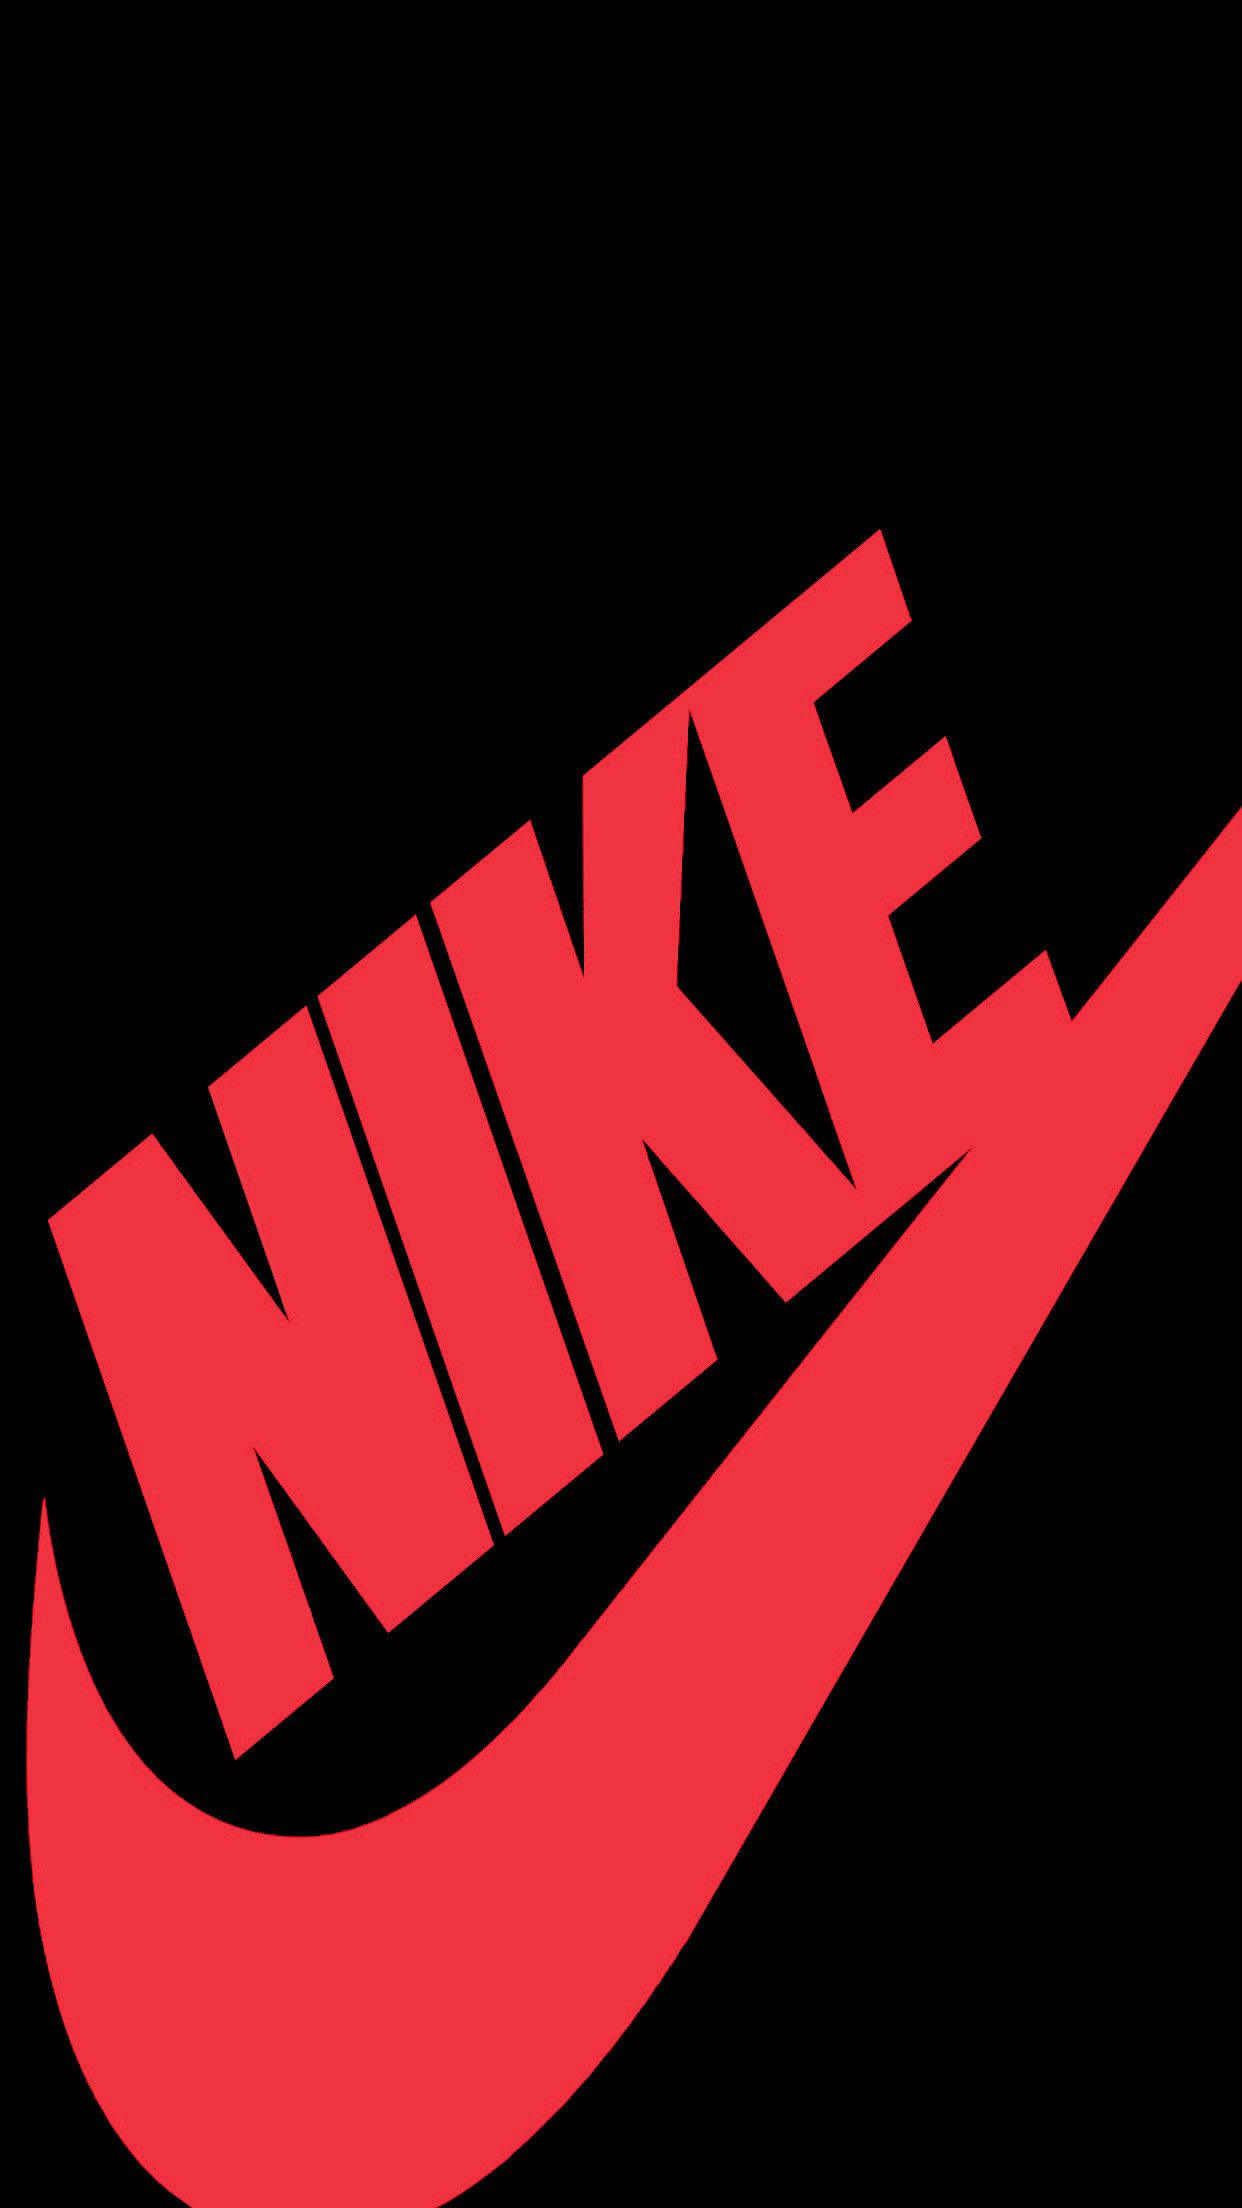 Nike Logo On A Black Background Background